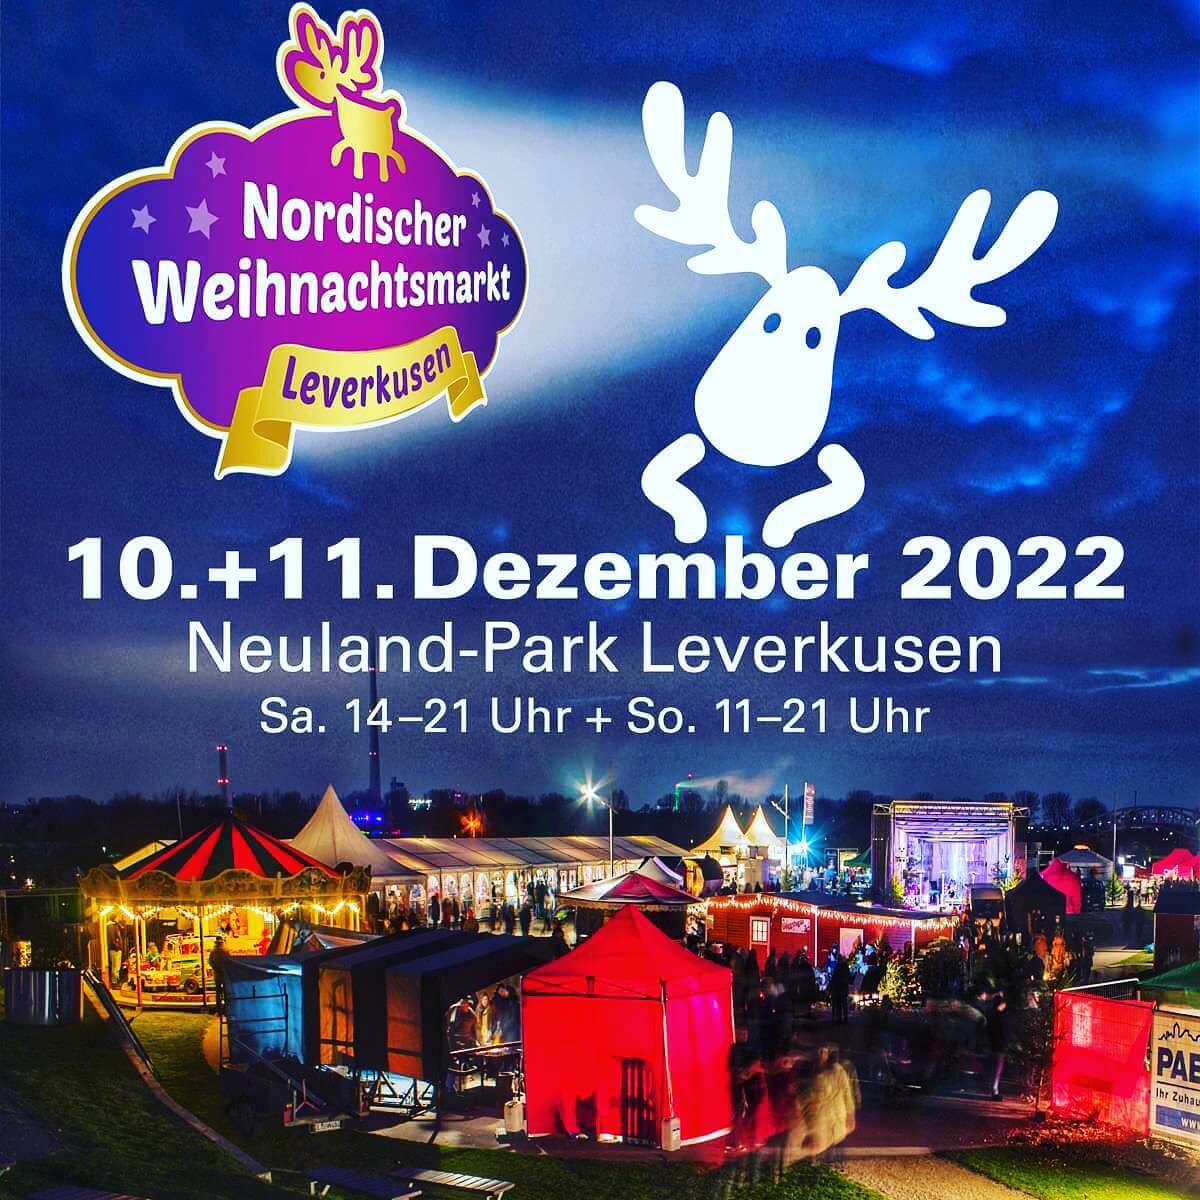 Nordischer Weihnachtsmarkt Leverkusen - Neulandpark